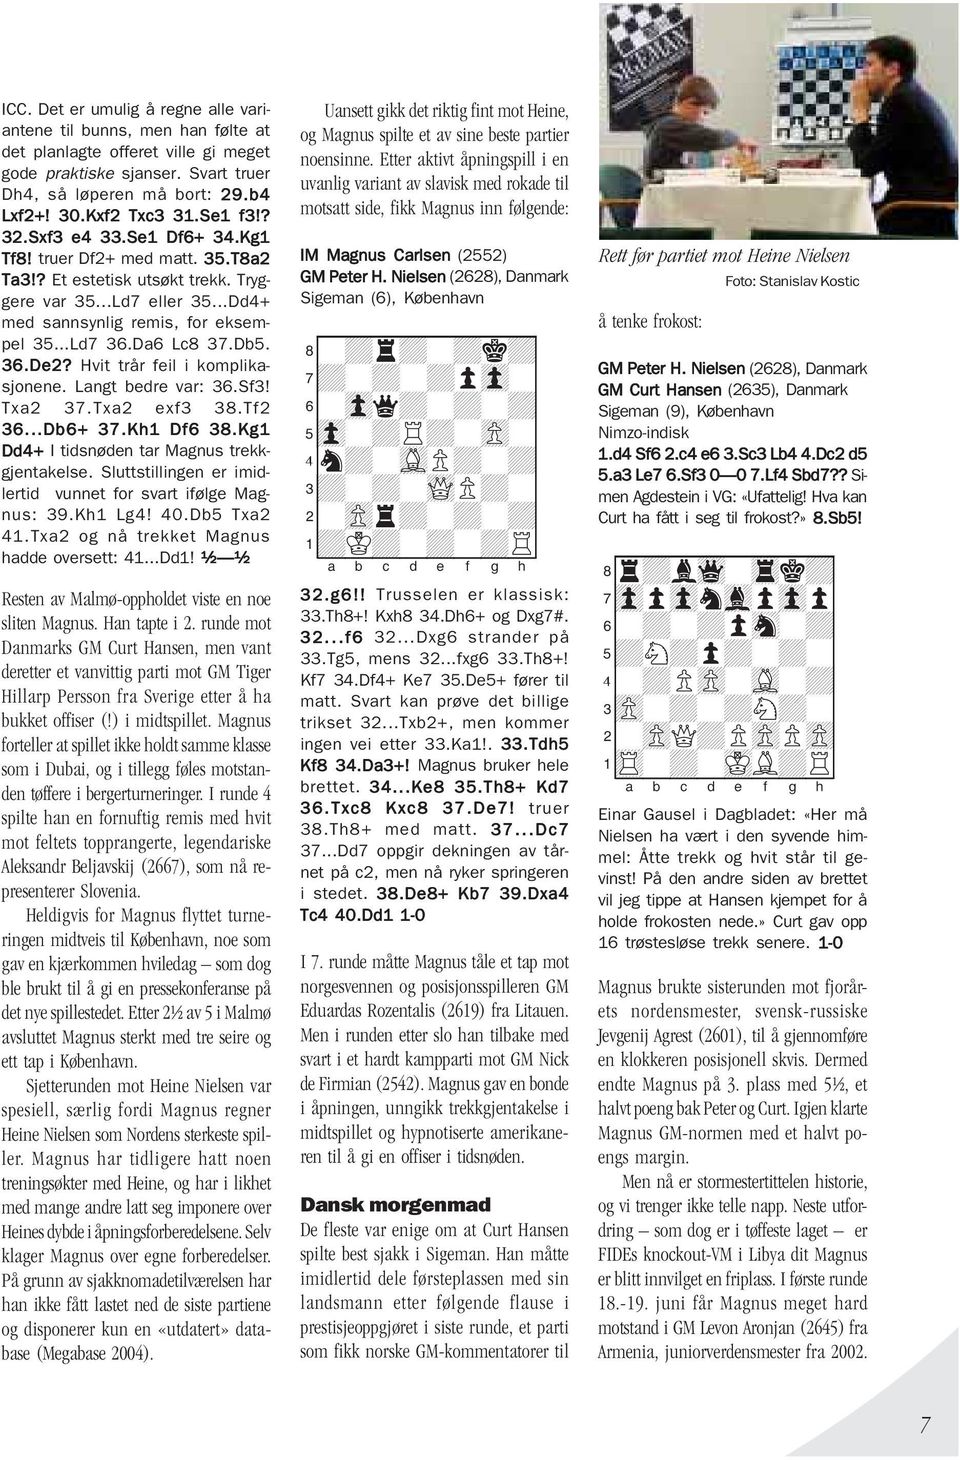 Da6 Lc8 37.Db5. 36.De2? Hvit trår feil i komplikasjonene. Langt bedre var: 36.Sf3! Txa2 37.Txa2 exf3 38.Tf2 36...Db6+ 37.Kh1 Df6 38.Kg1 Dd4+ I tidsnøden tar Magnus trekkgjentakelse.